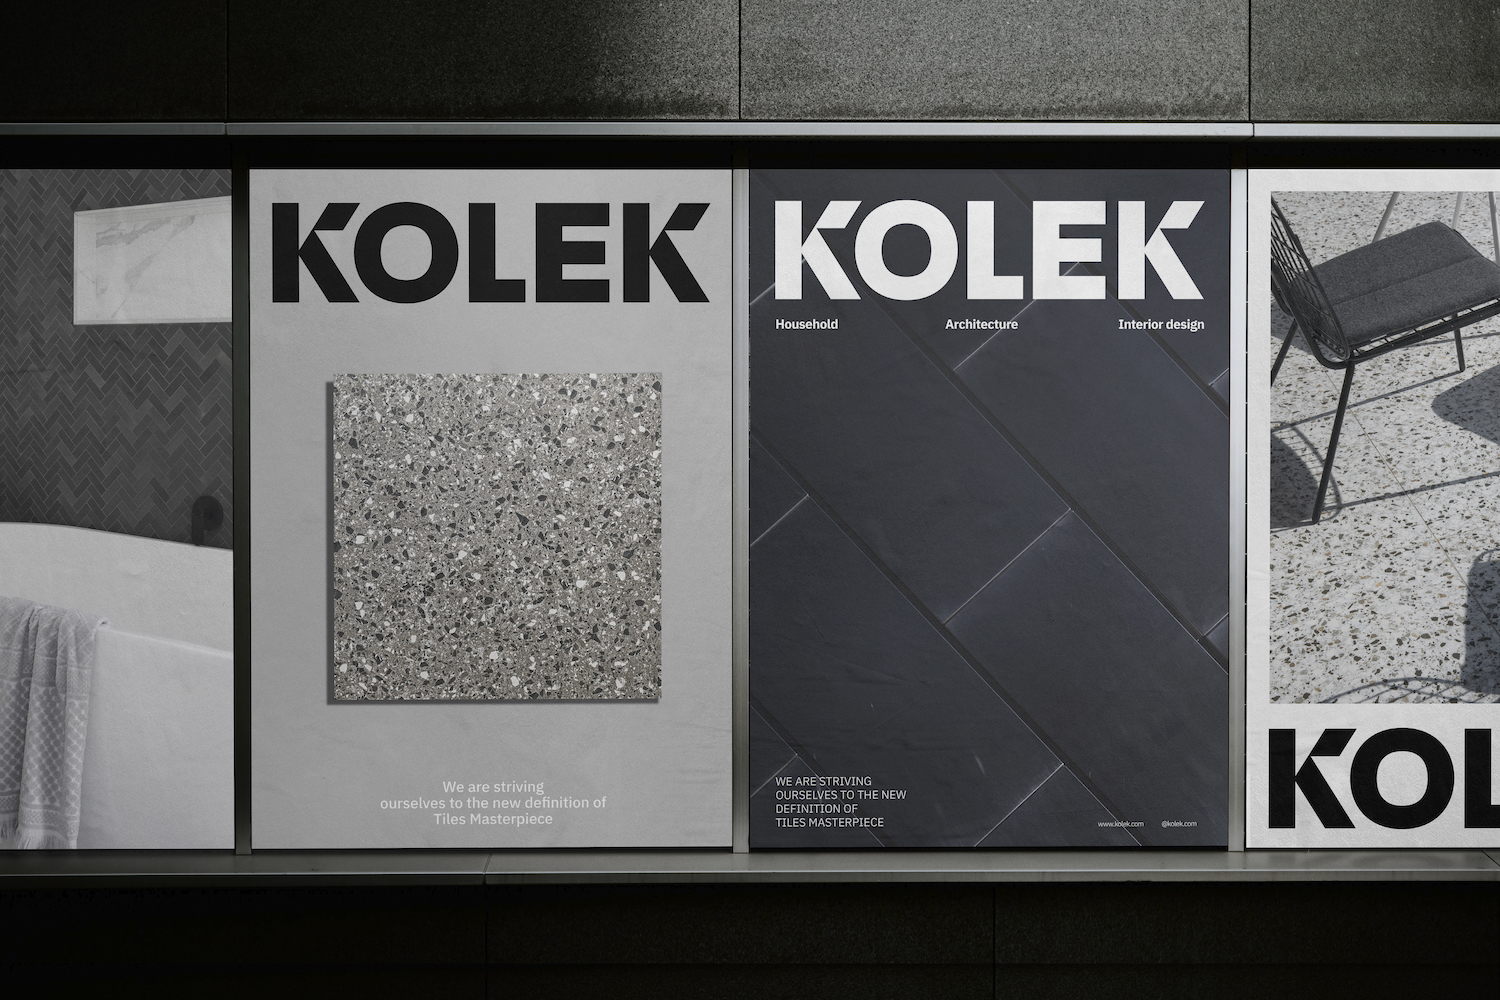 瓷砖品牌Kolek视觉VI设计